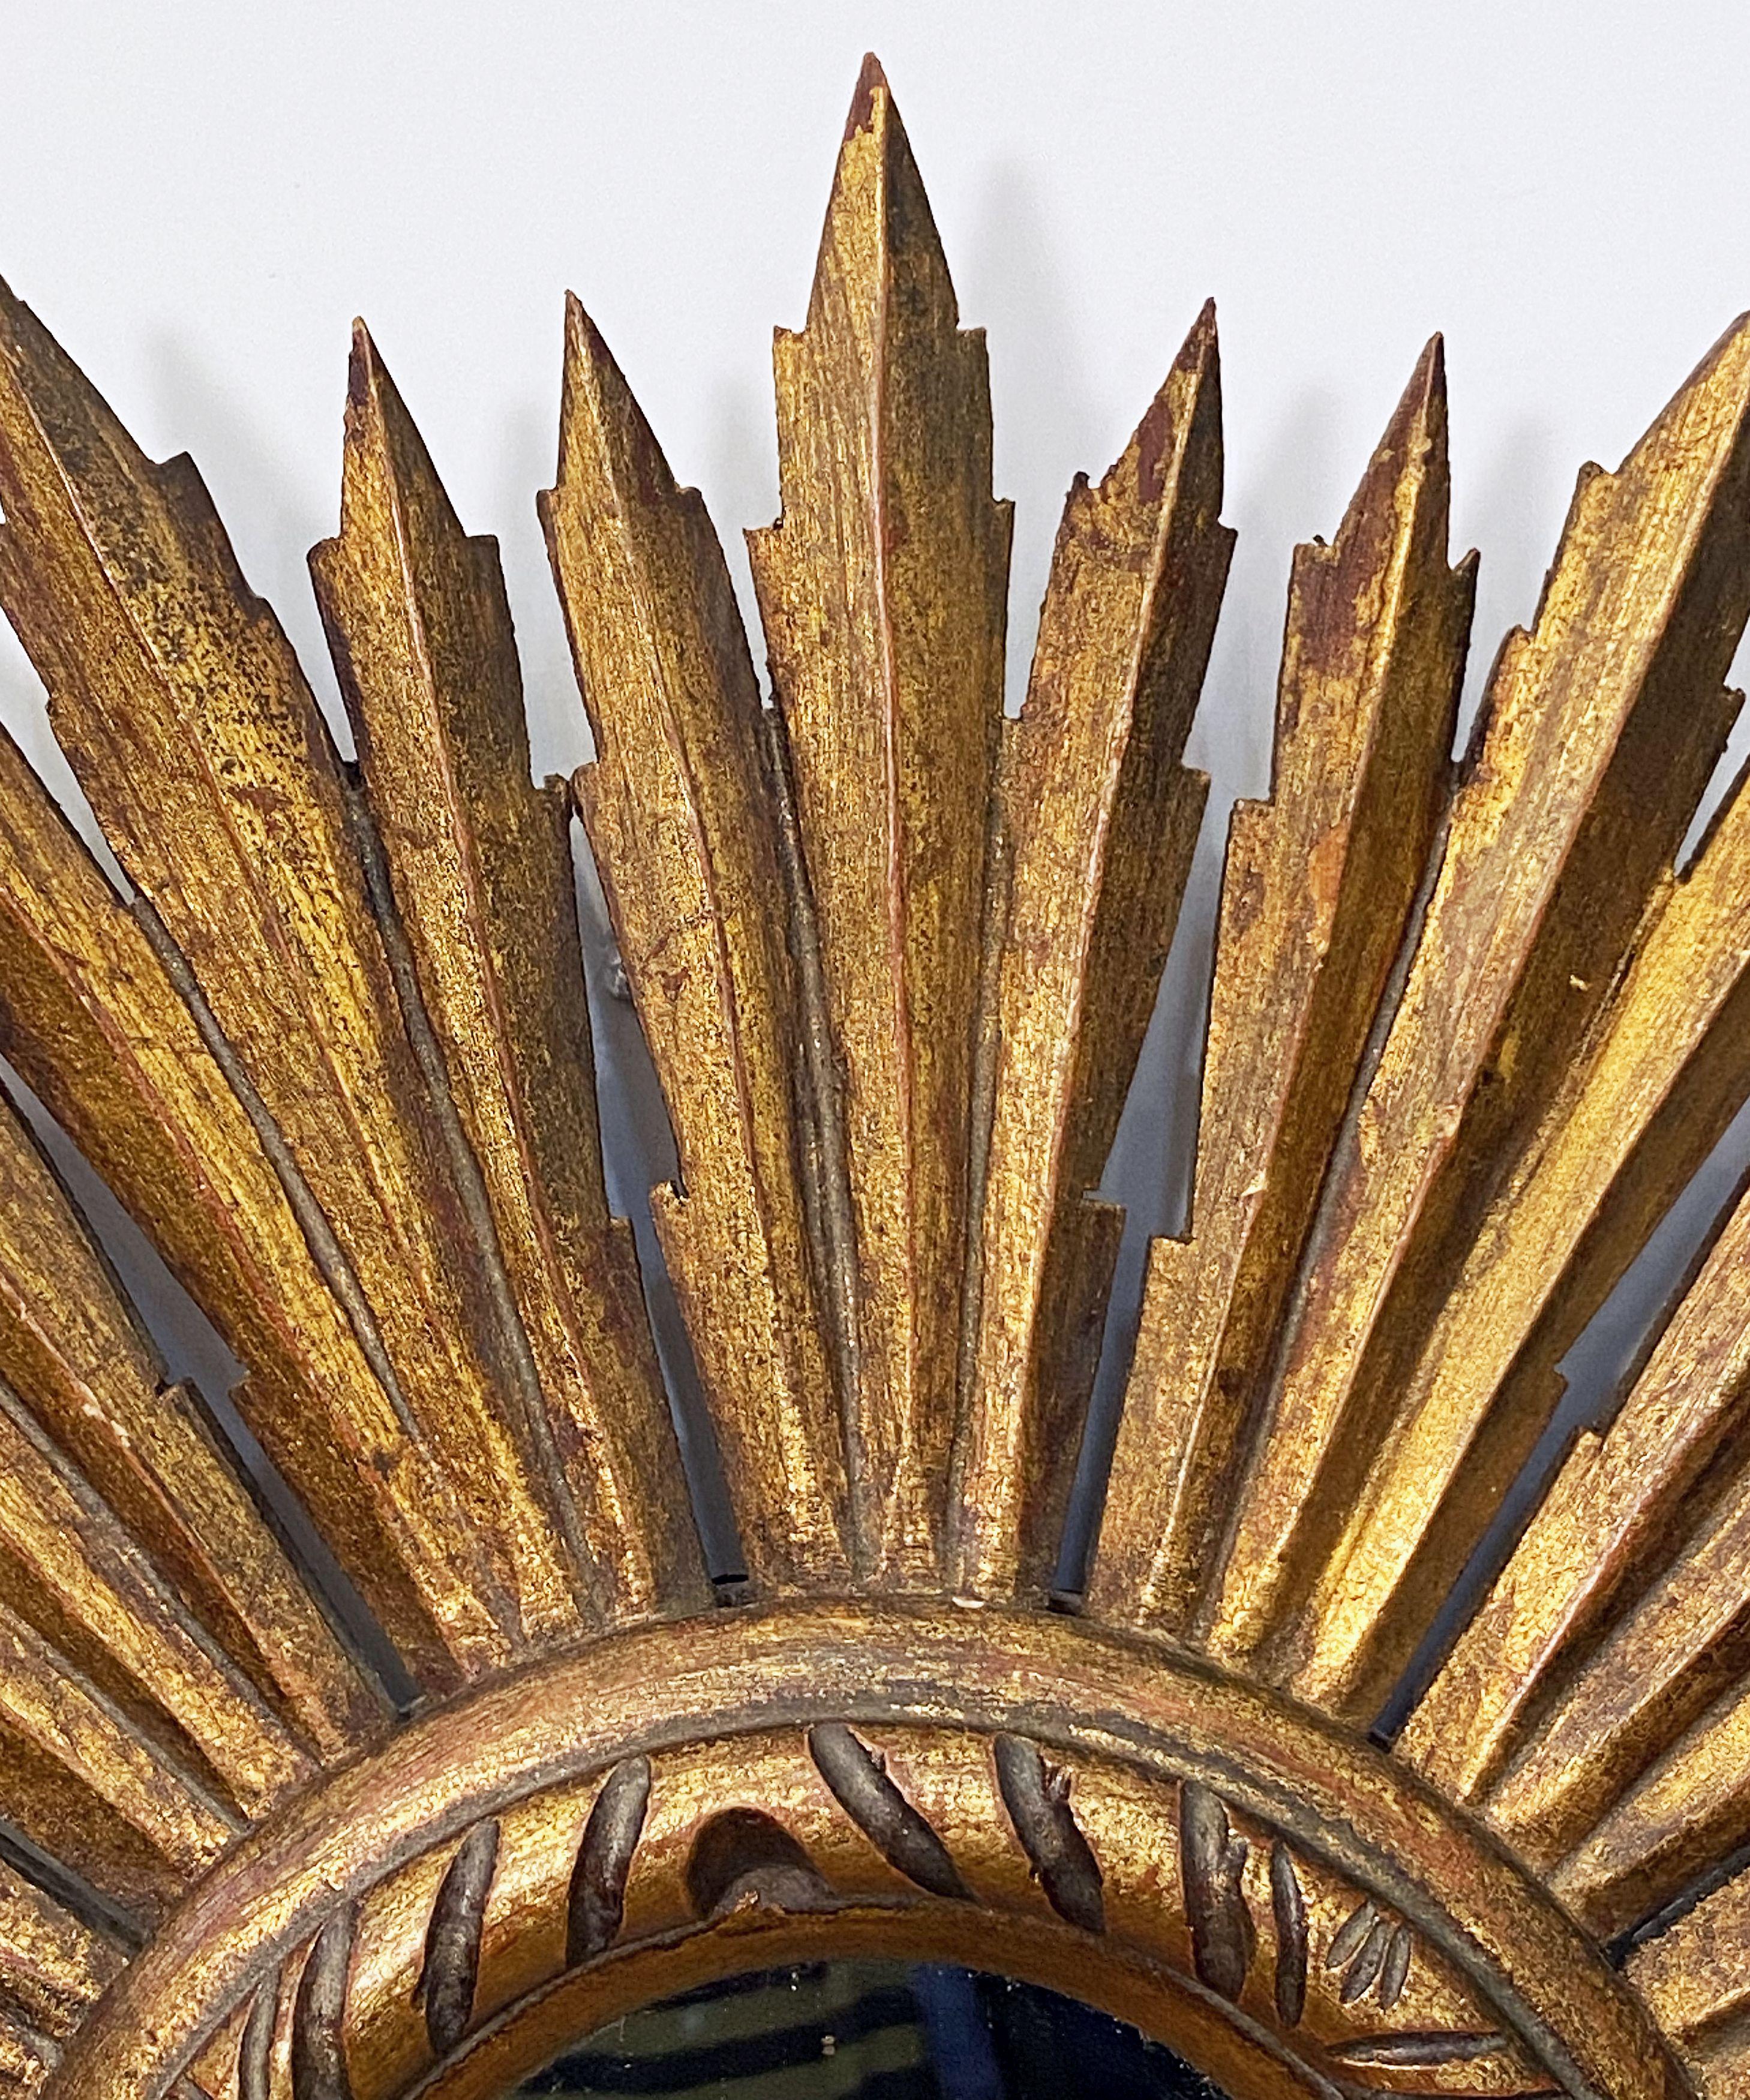 Spanish Gilt Starburst or Sunburst Mirror from Spain (Diameter 18)